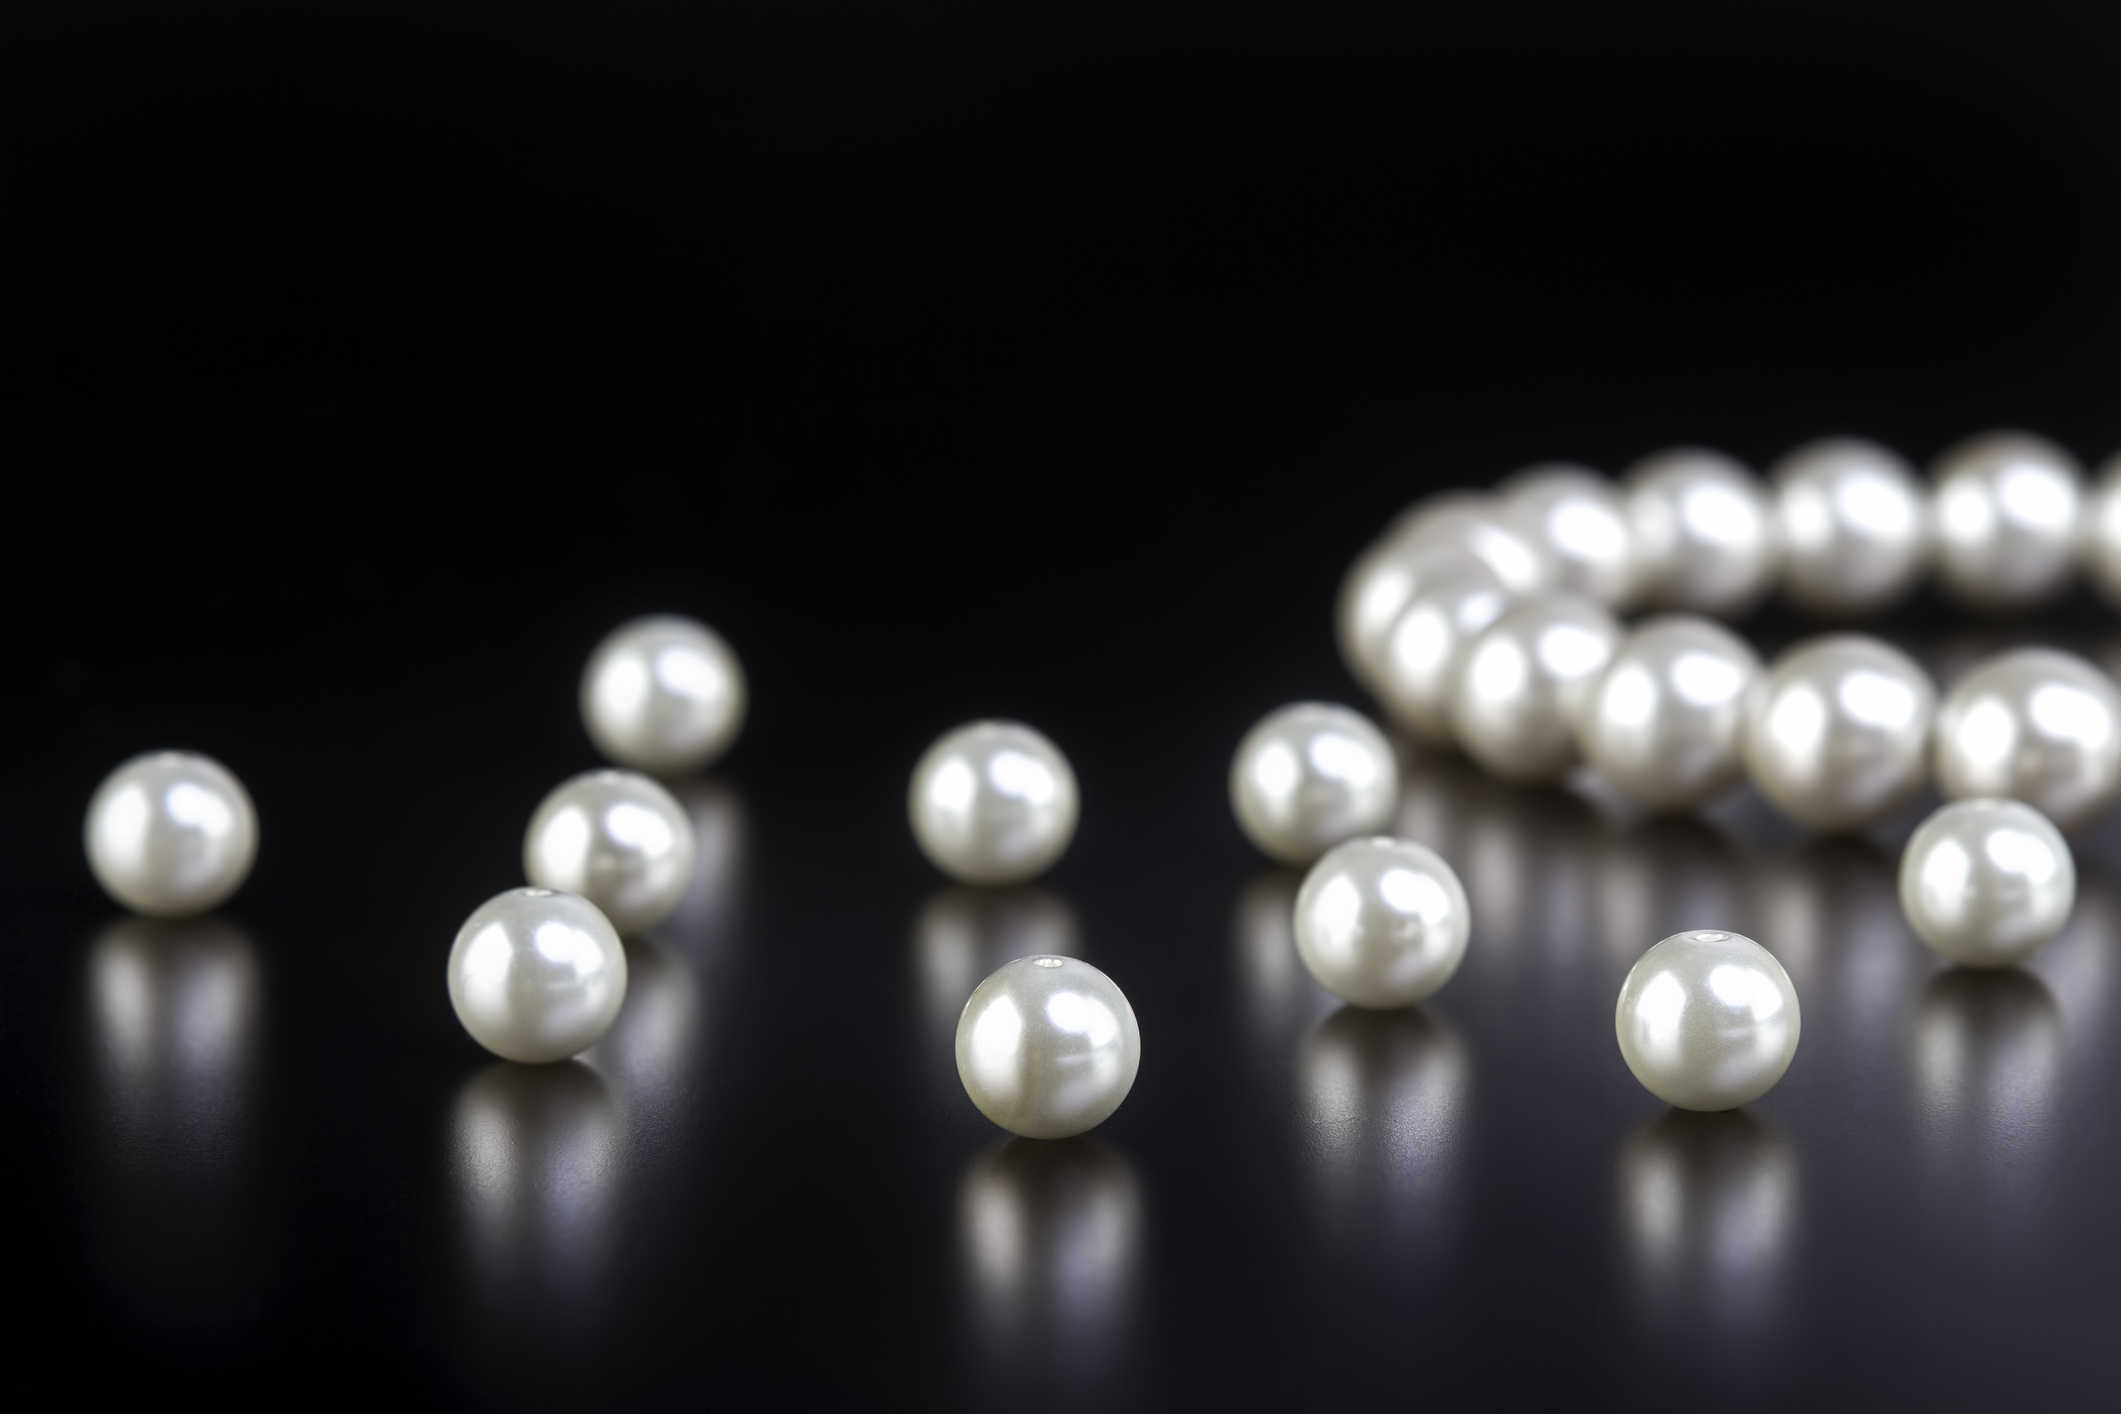 Infilature collane con perle con l'utilizzo dei migliori materiali messi in commercio.